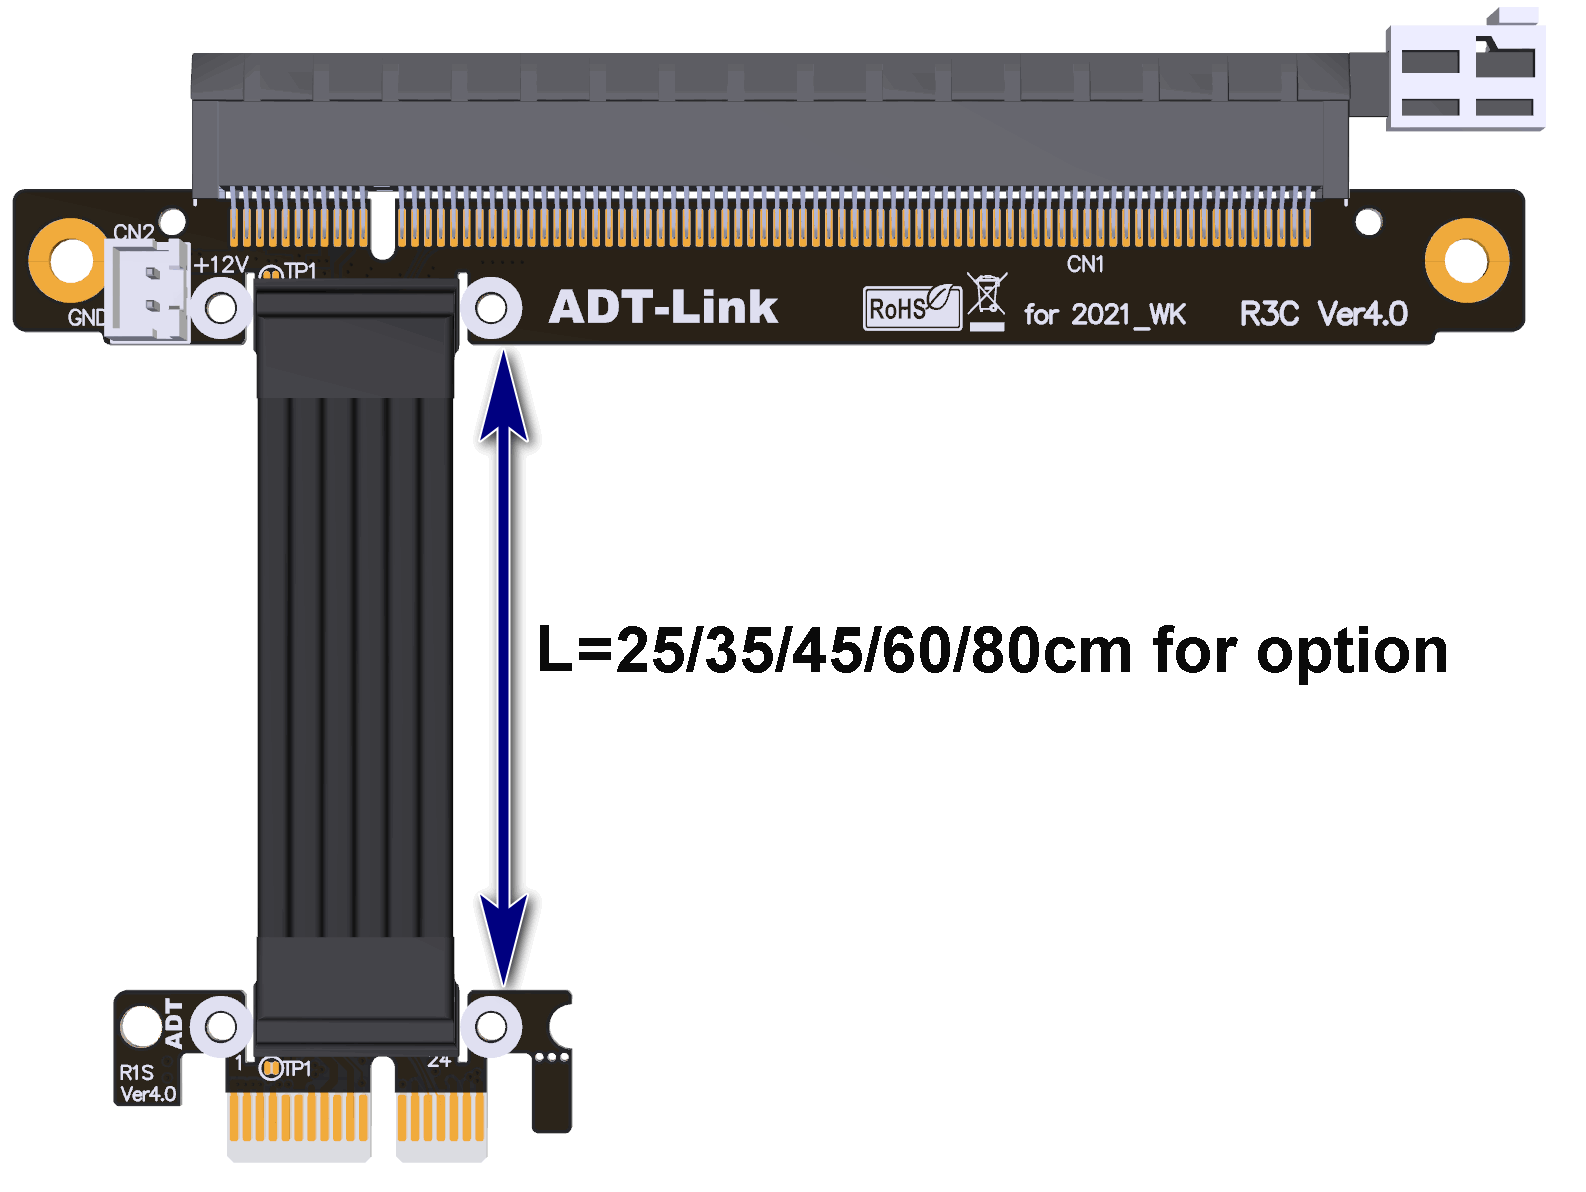  PCI-E 4.0 x16 to x1 